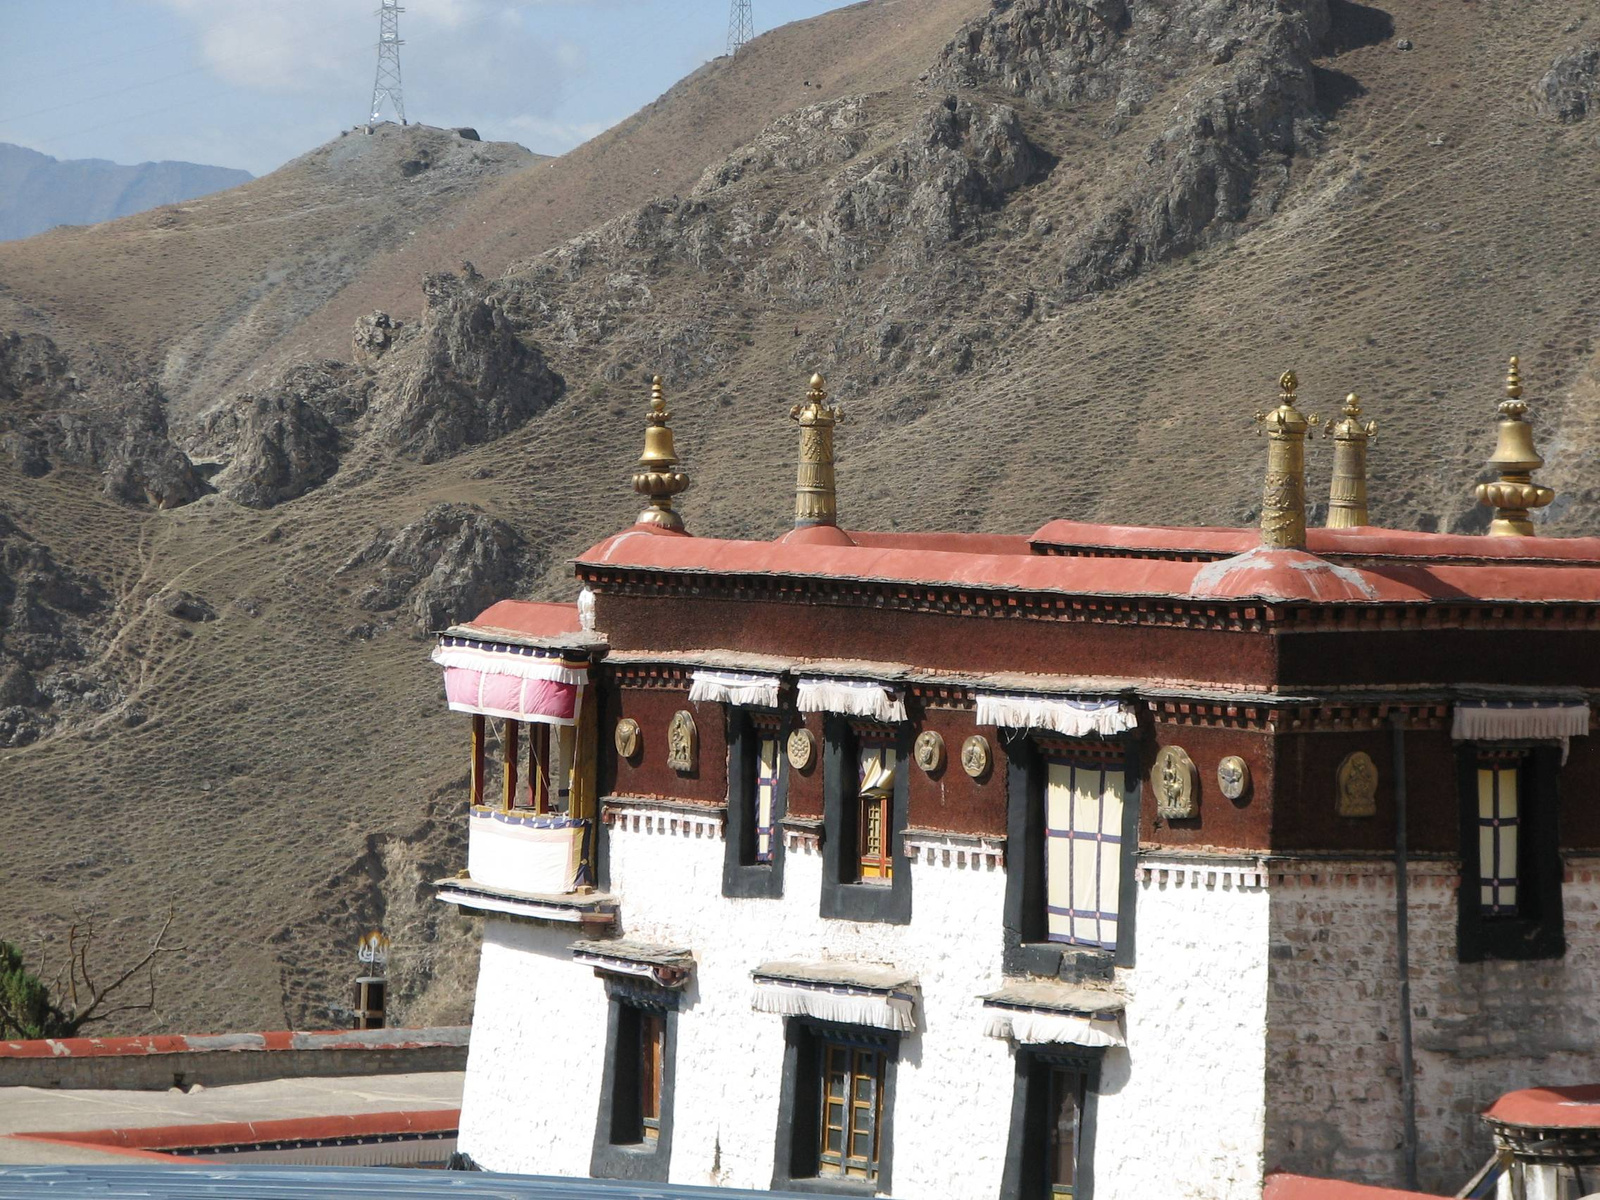 2010szecsuán-tibet 353